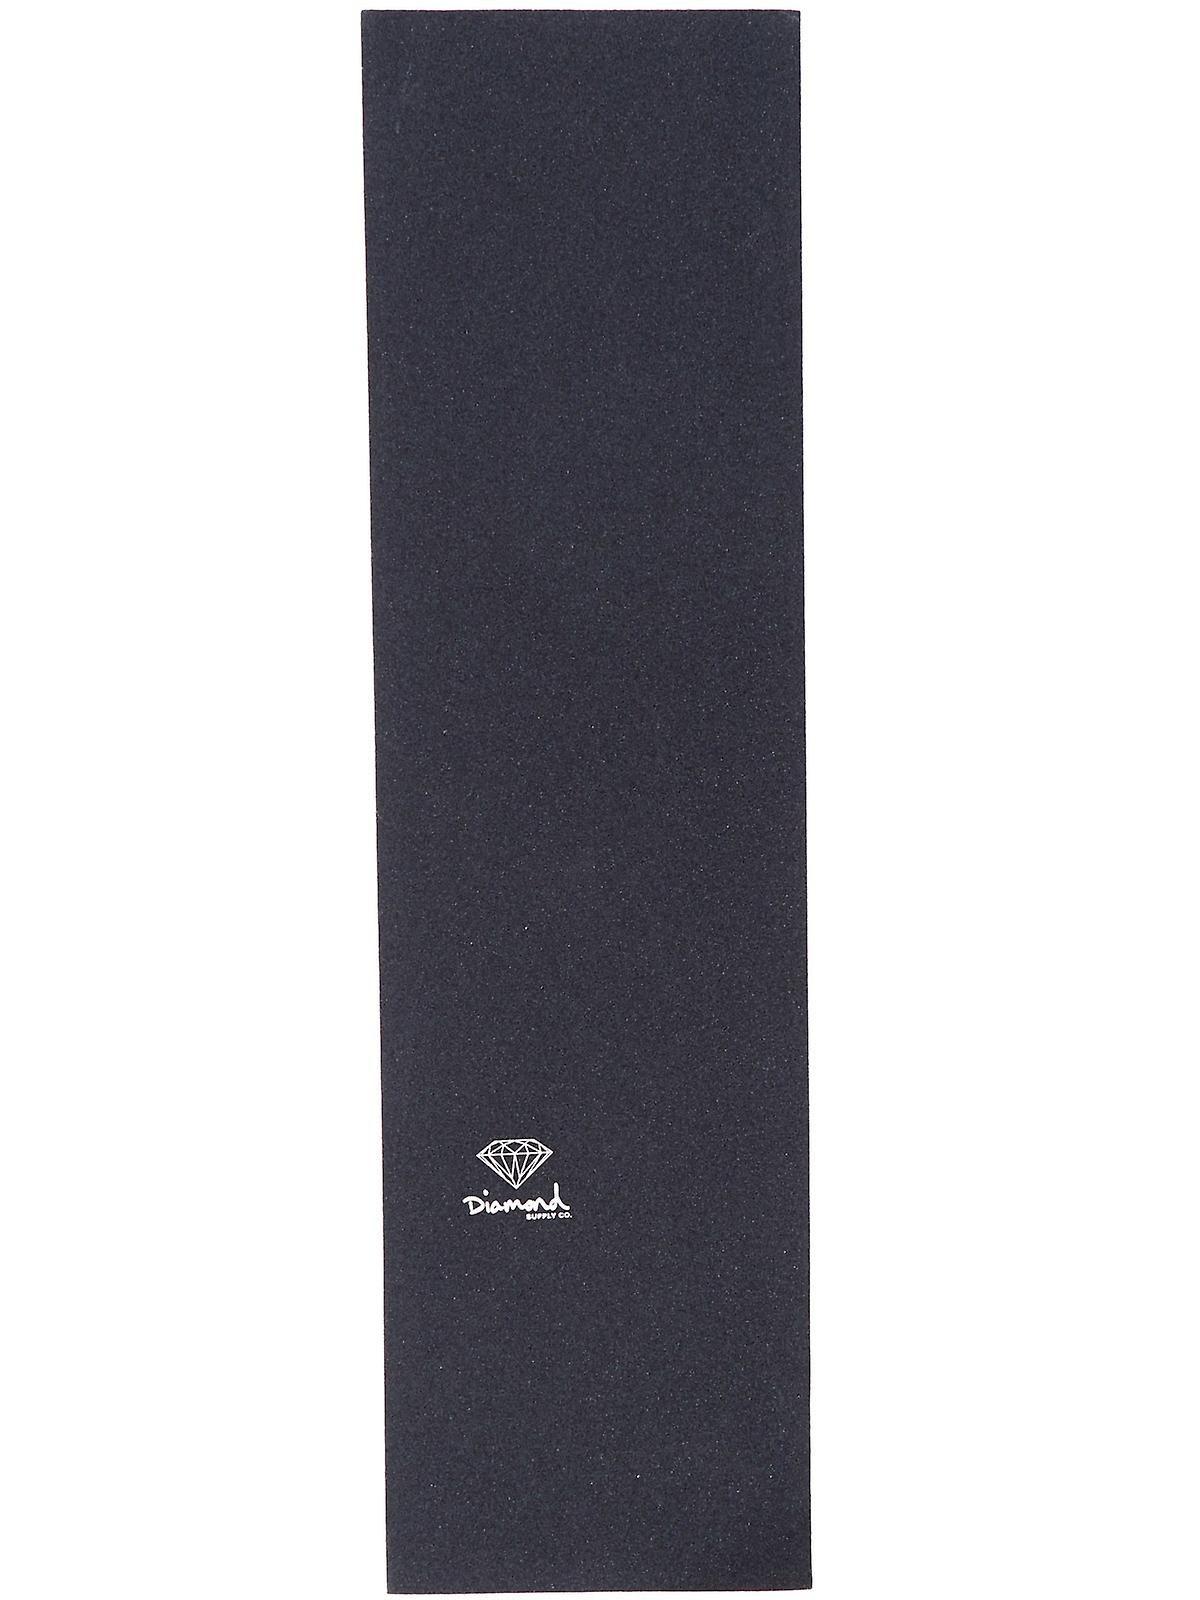 Black and White Diamond Clothing Logo - Diamond Supply Co White Superior Logo Skateboard Grip Tape